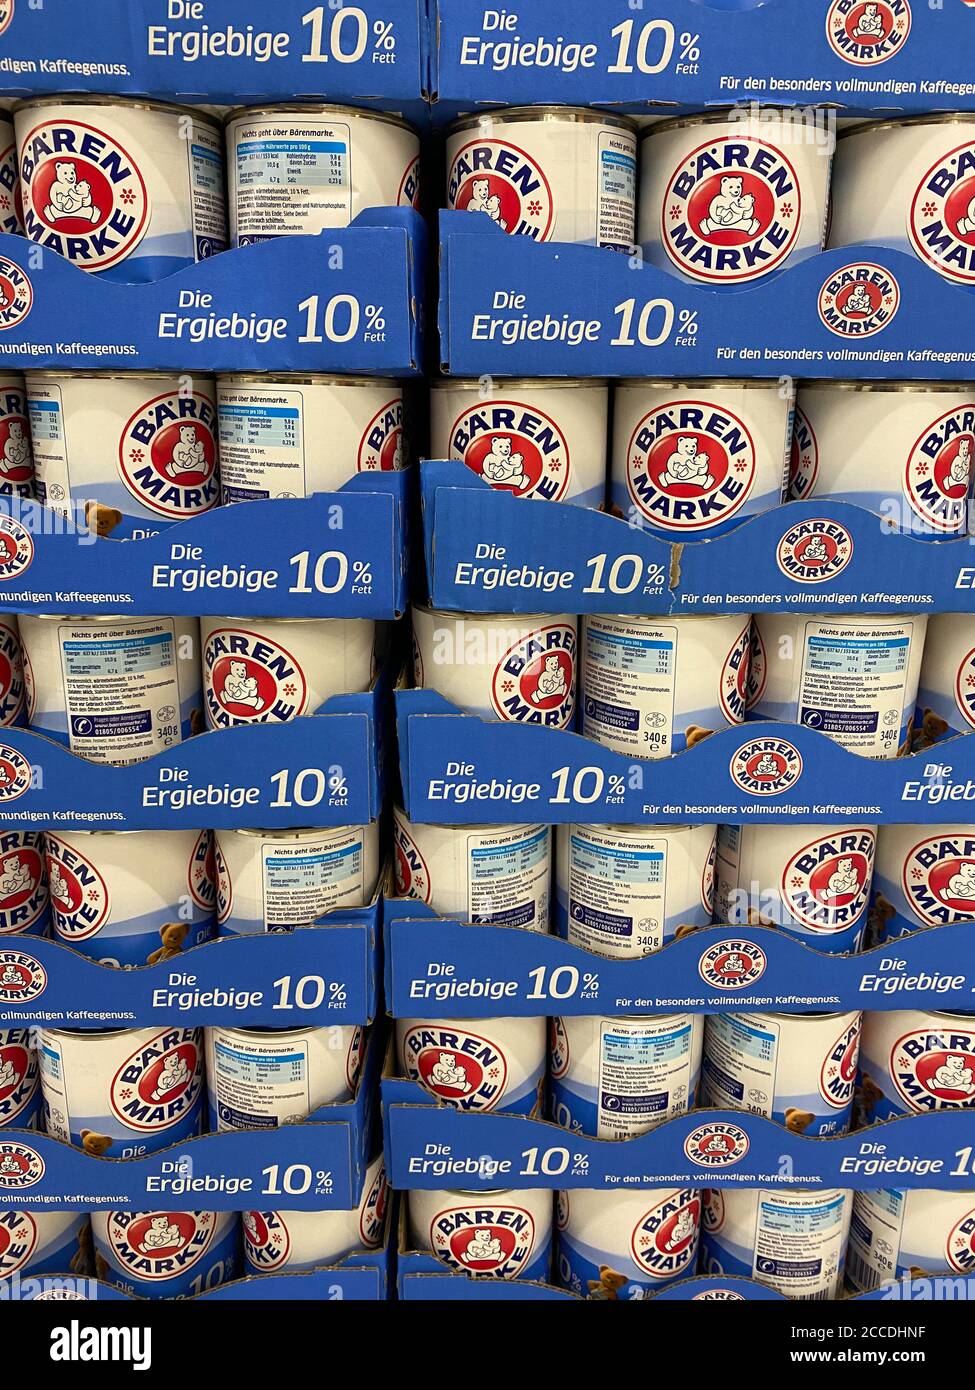 Viersen, Allemagne - juillet 9. 2020: Gros plan des moules empilés Bärenmarke lait condensé dans le supermarché allemand (concentration au centre) Banque D'Images